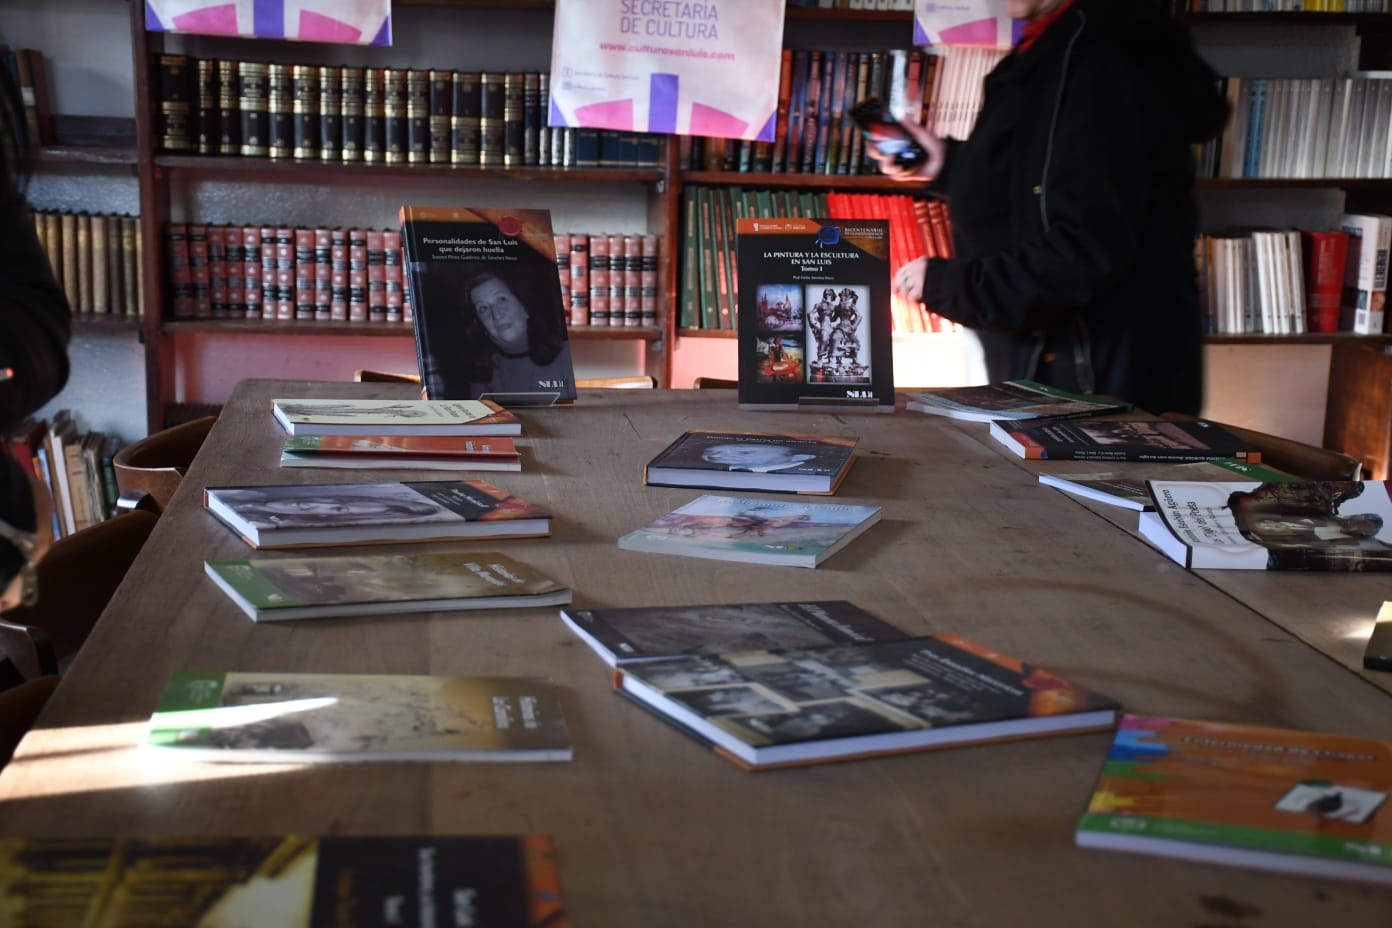 San Luis Libro inauguró un rincón literario en Fortuna